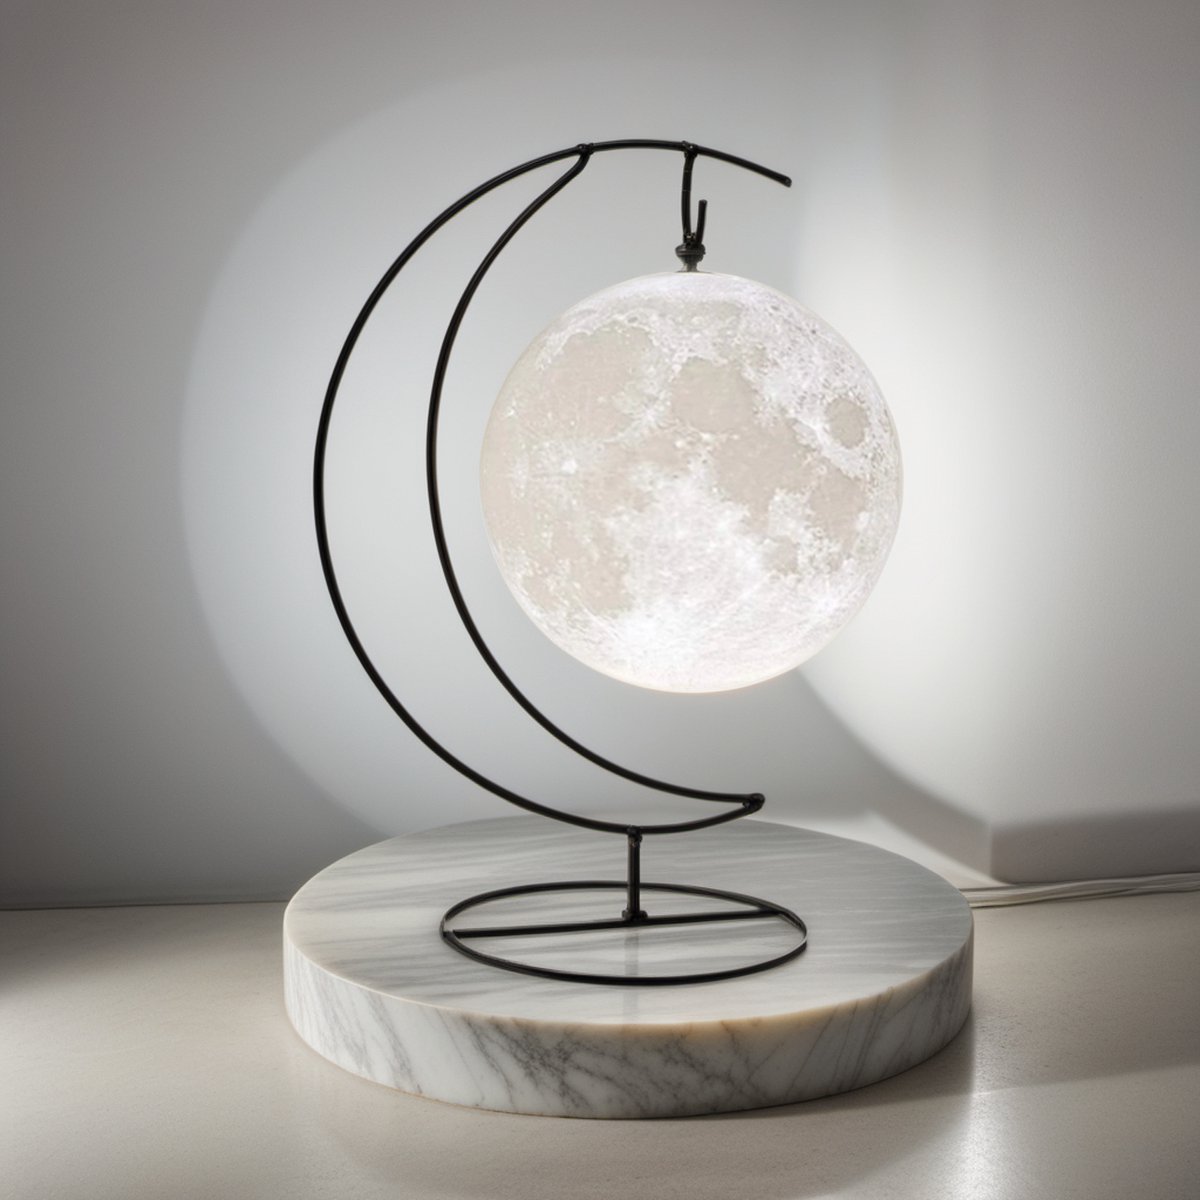 Lukana Maanlamp 3D Tafellamp 15 cm met 16 Dimbare LED Kleuren & Afstandsbediening - Nachtlamp